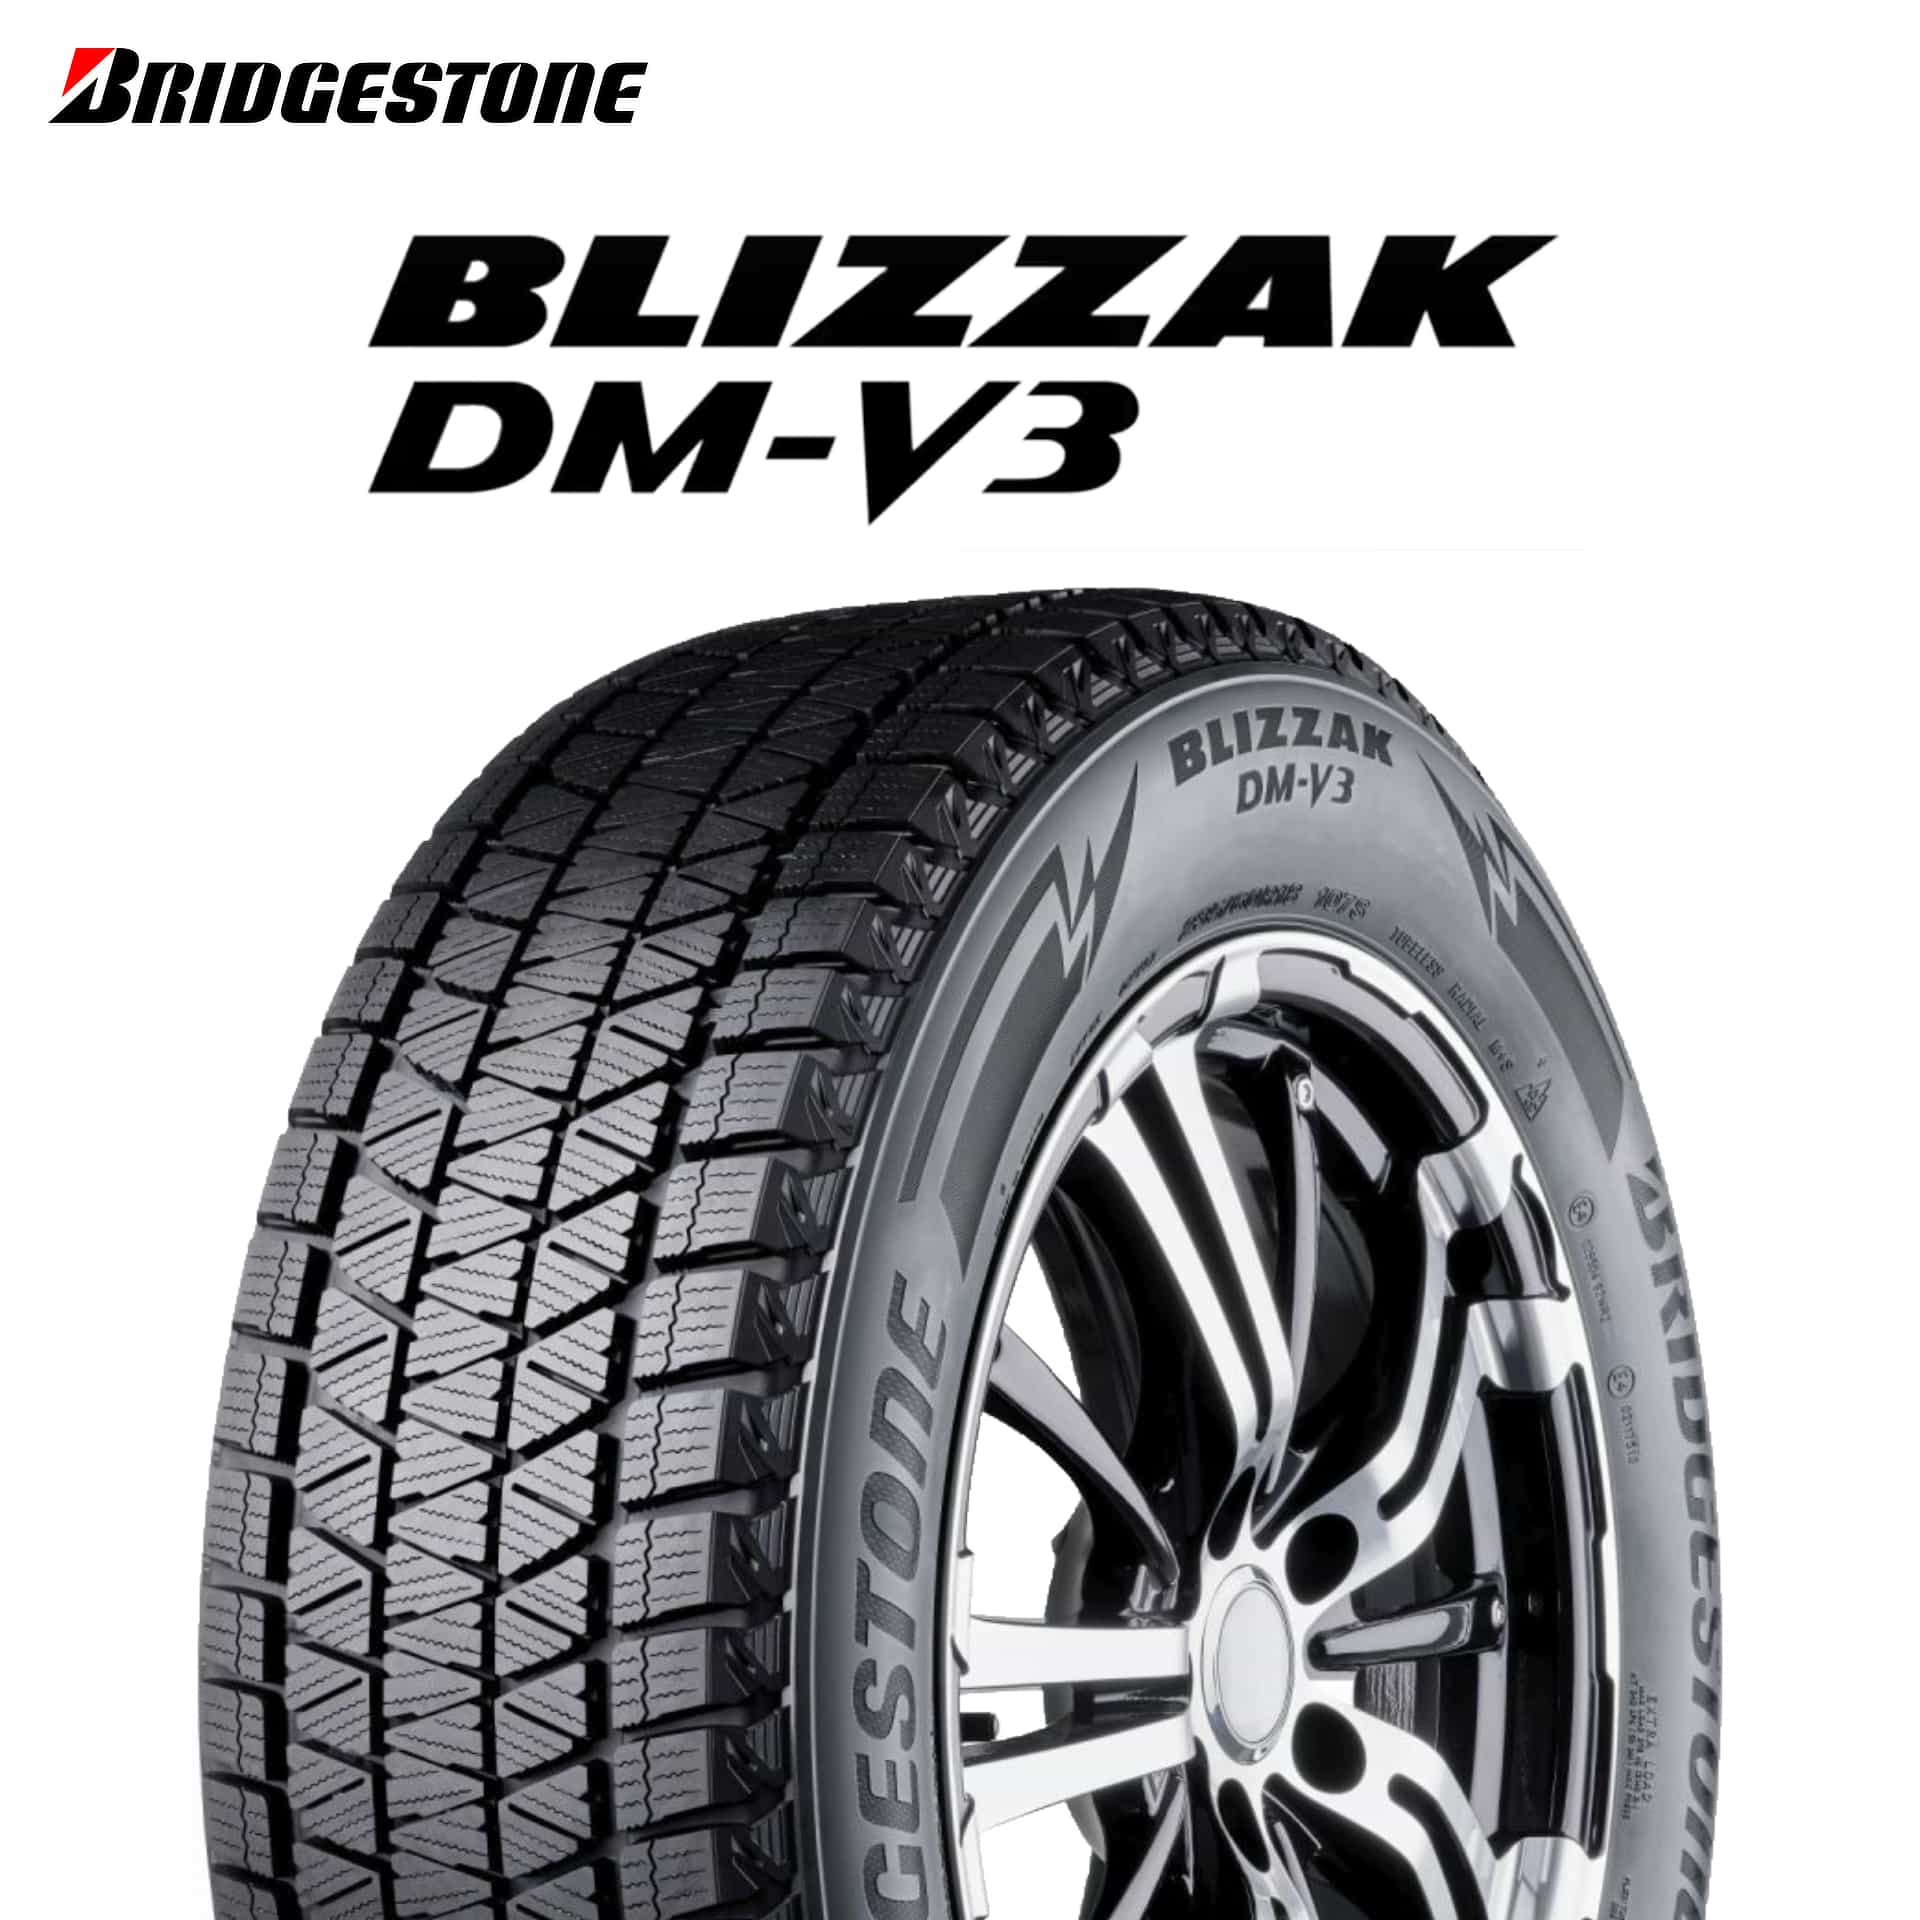 タイヤの種類スタッドレスタイヤレクサス20インチスタッドレス DM-V3 ブリザック ナット付き